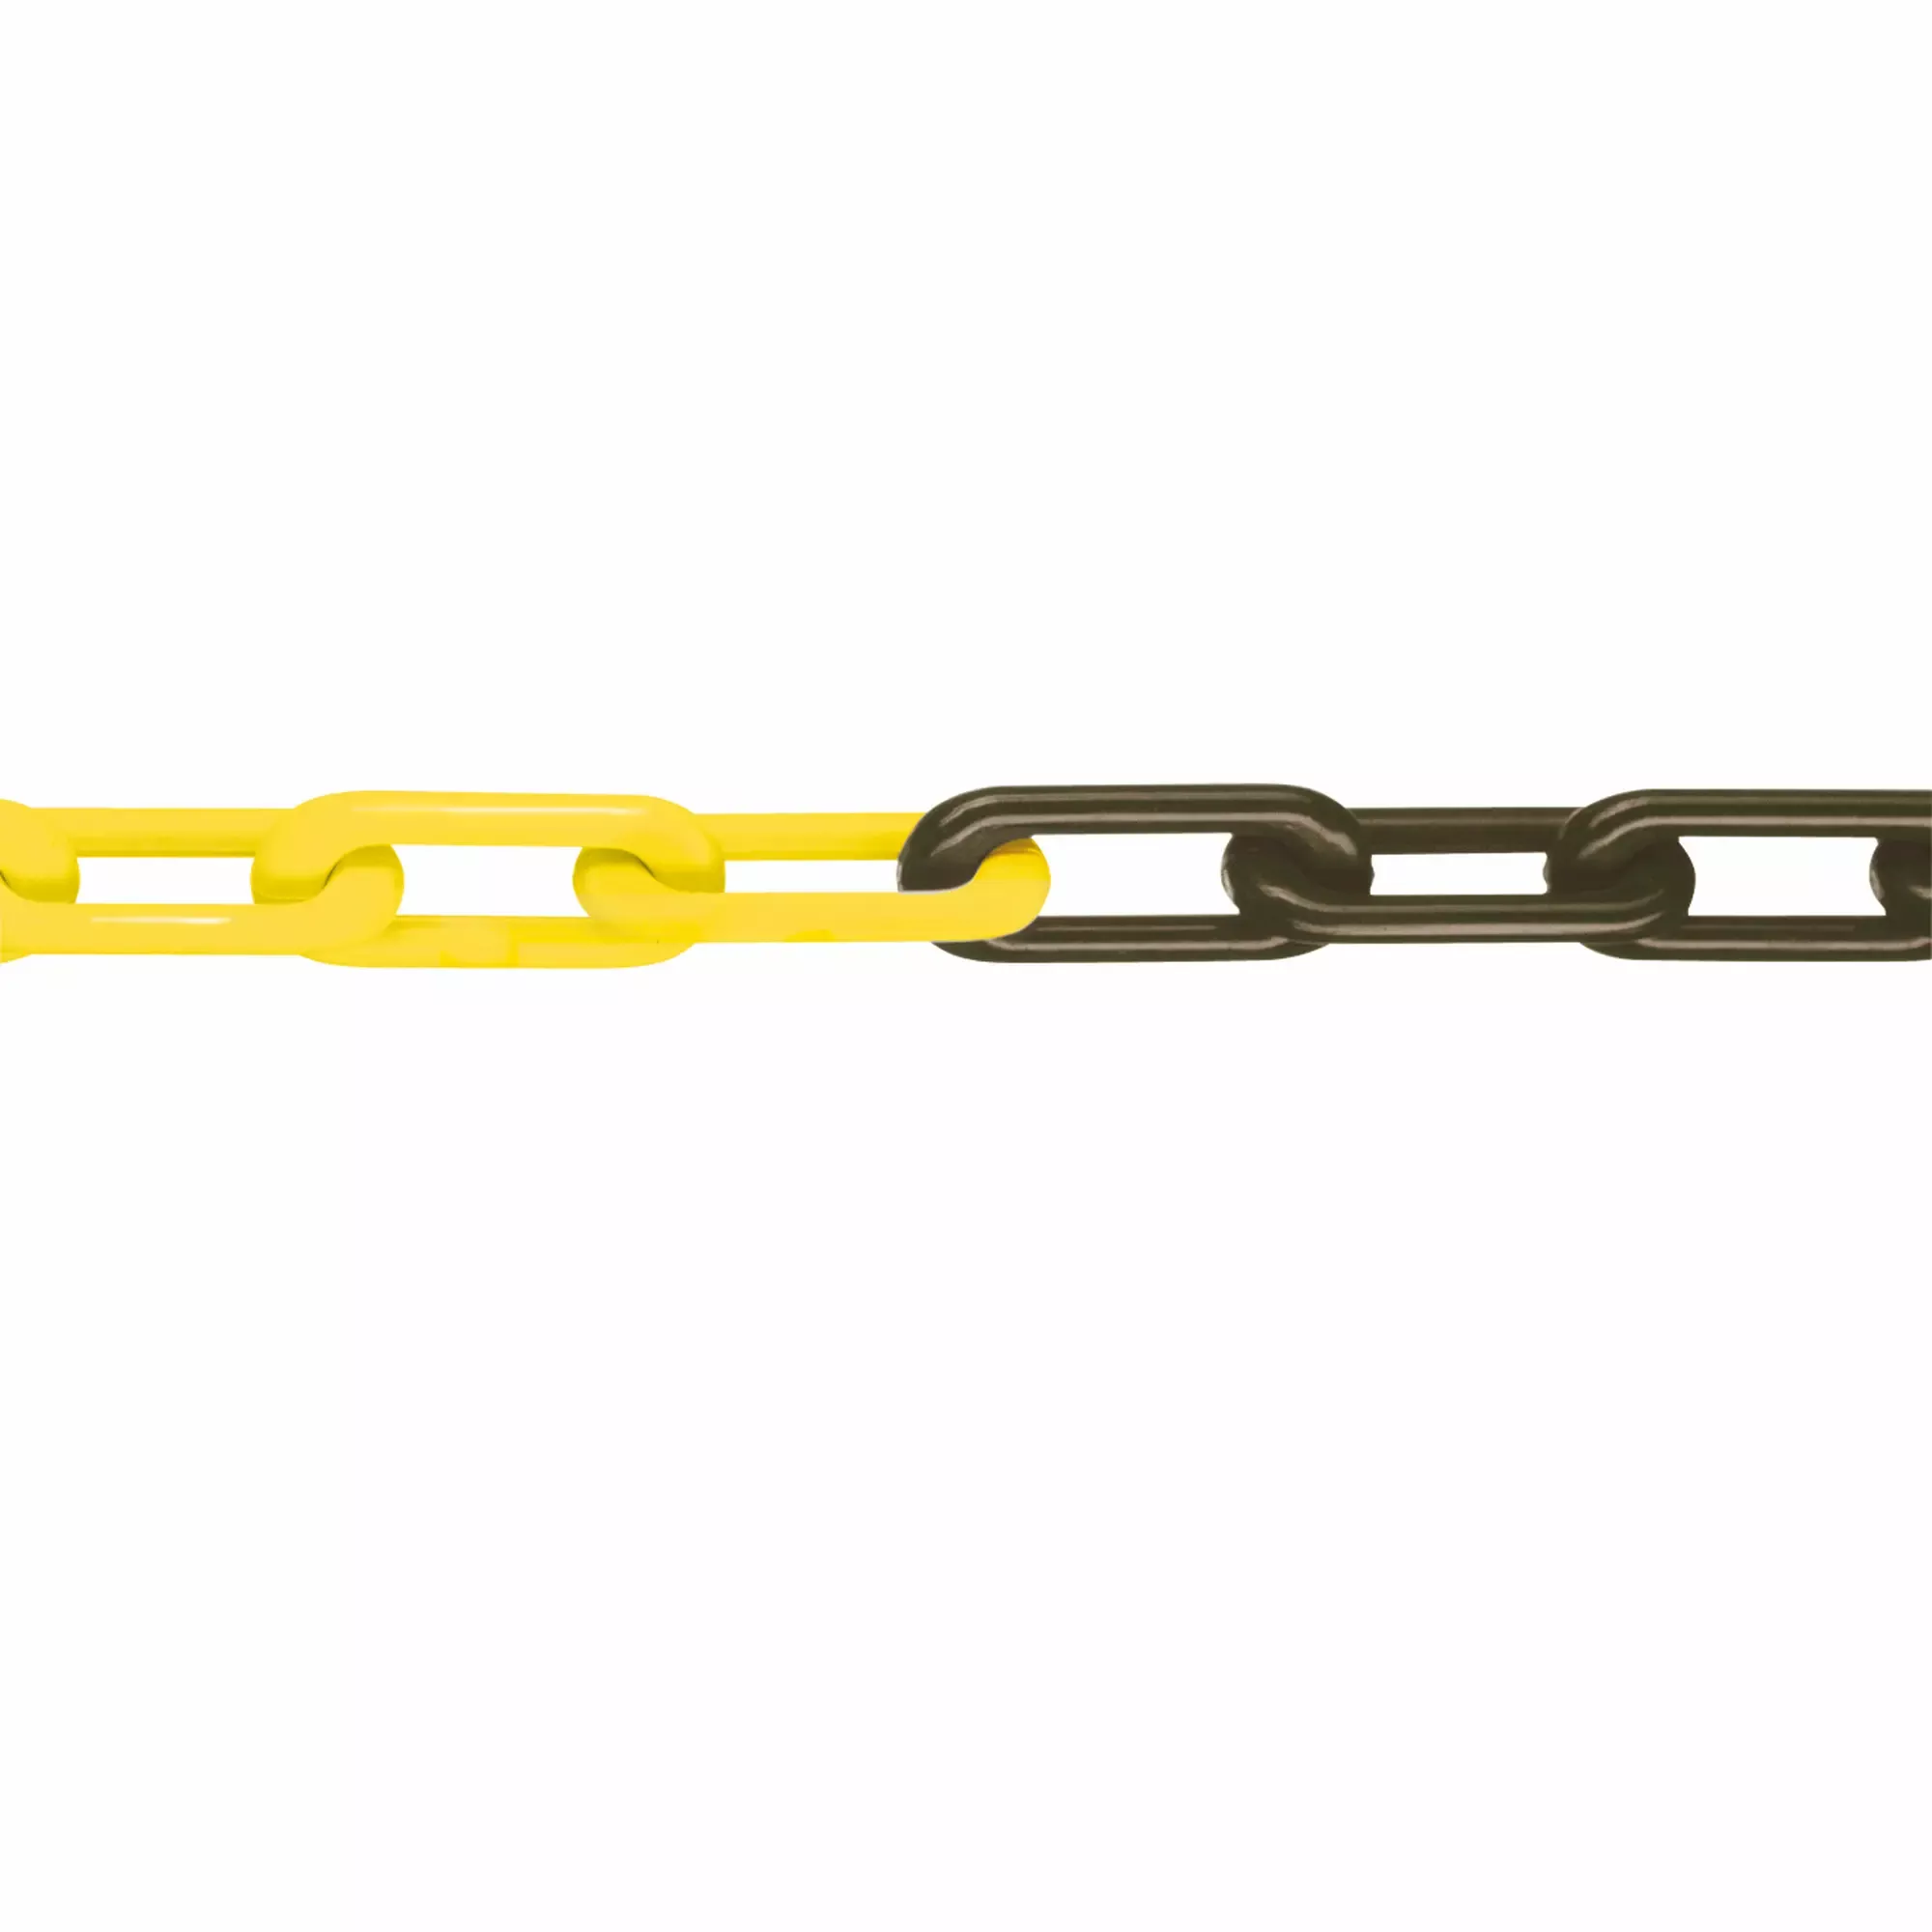 Nylon-Gliederkette, Mnk-Güte 8, geprüft, schwarz-gelb, 8 mm